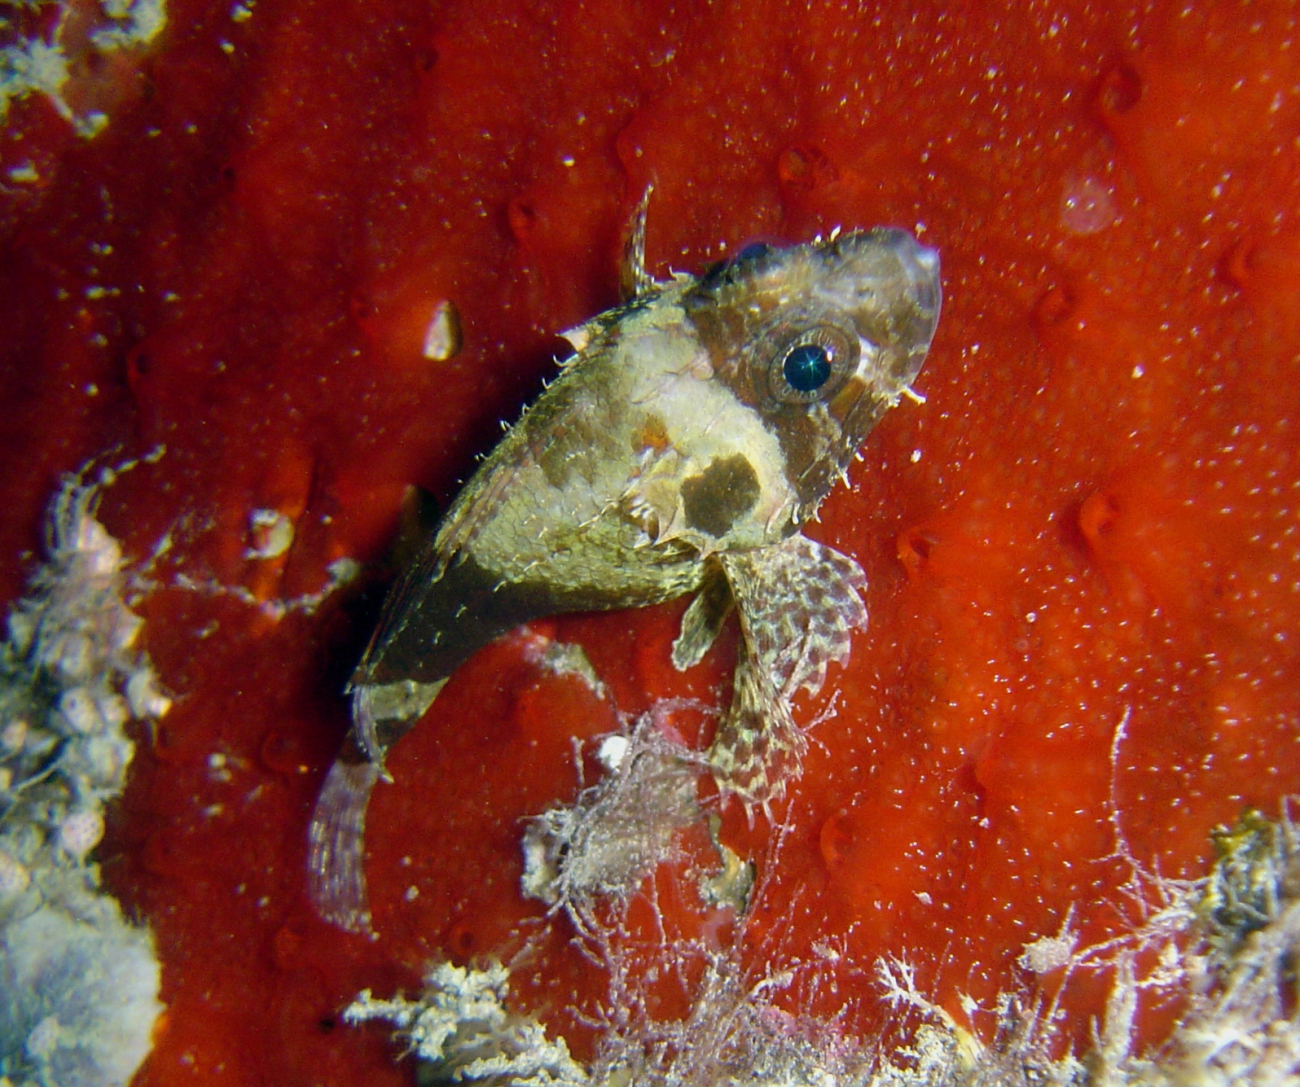 Small scorpionfish?